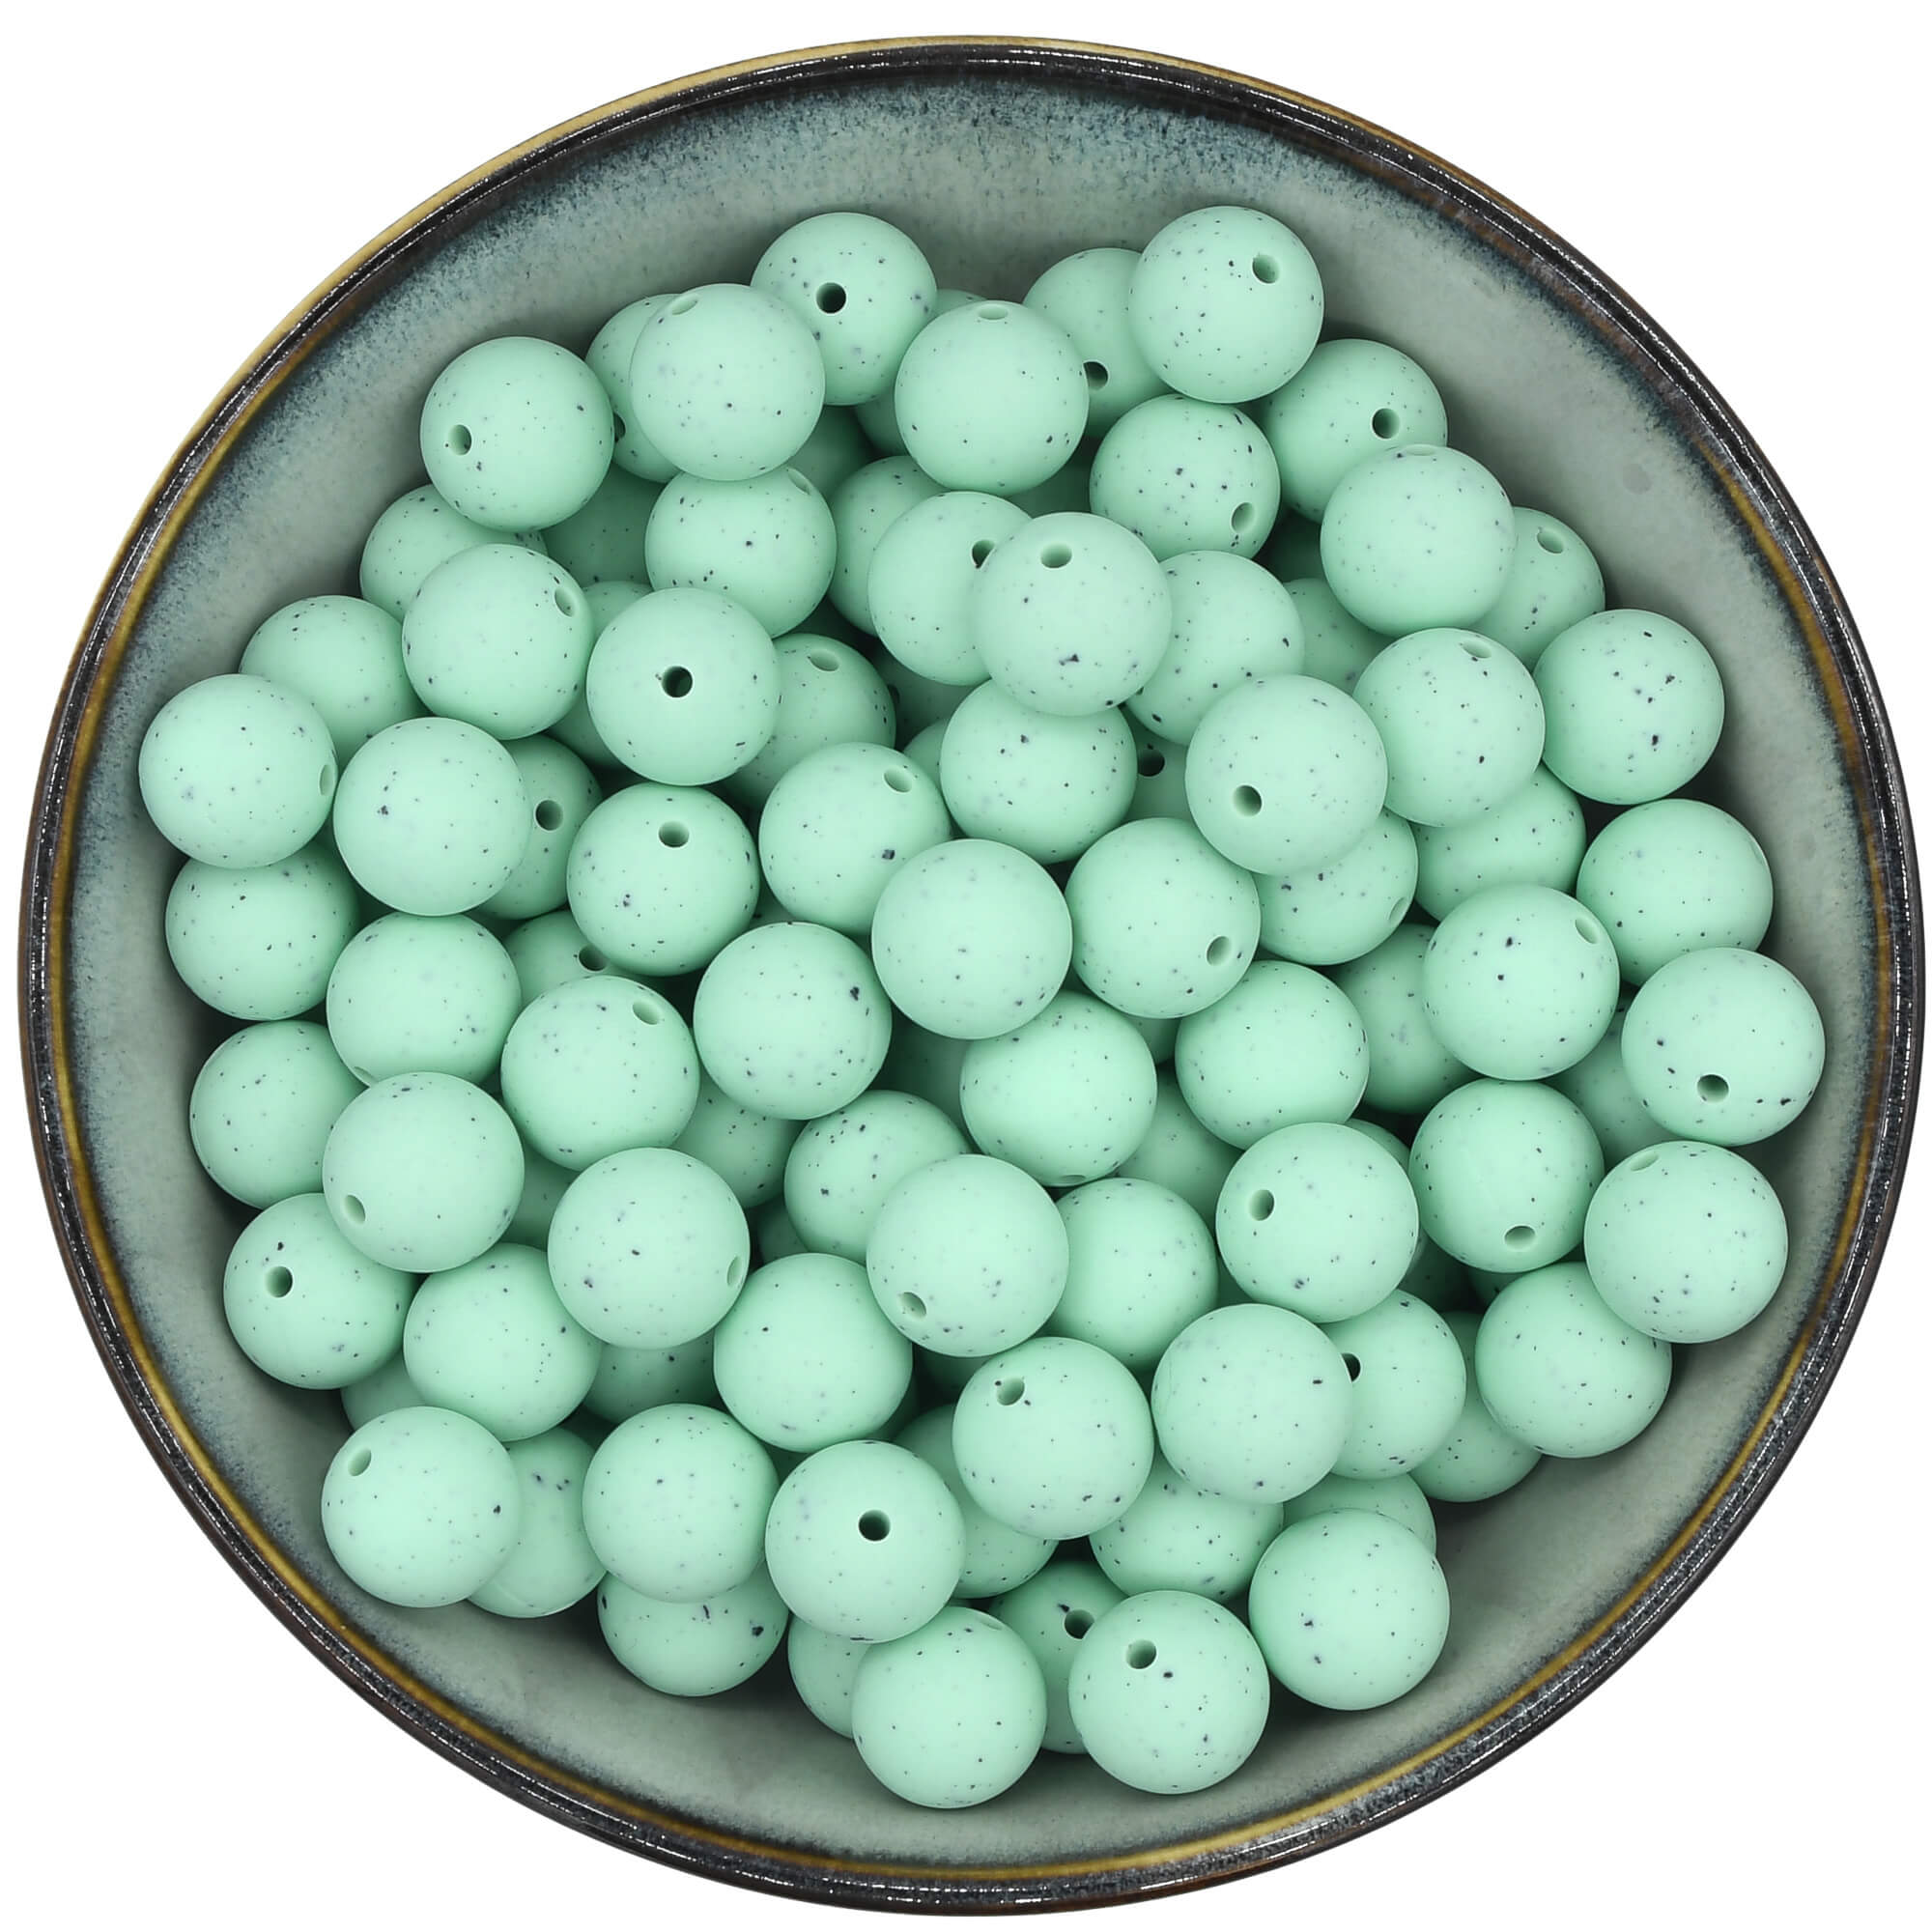 Ronde siliconen kraal van 15 mm in de kleur Mintgroen met zwarte spikkels